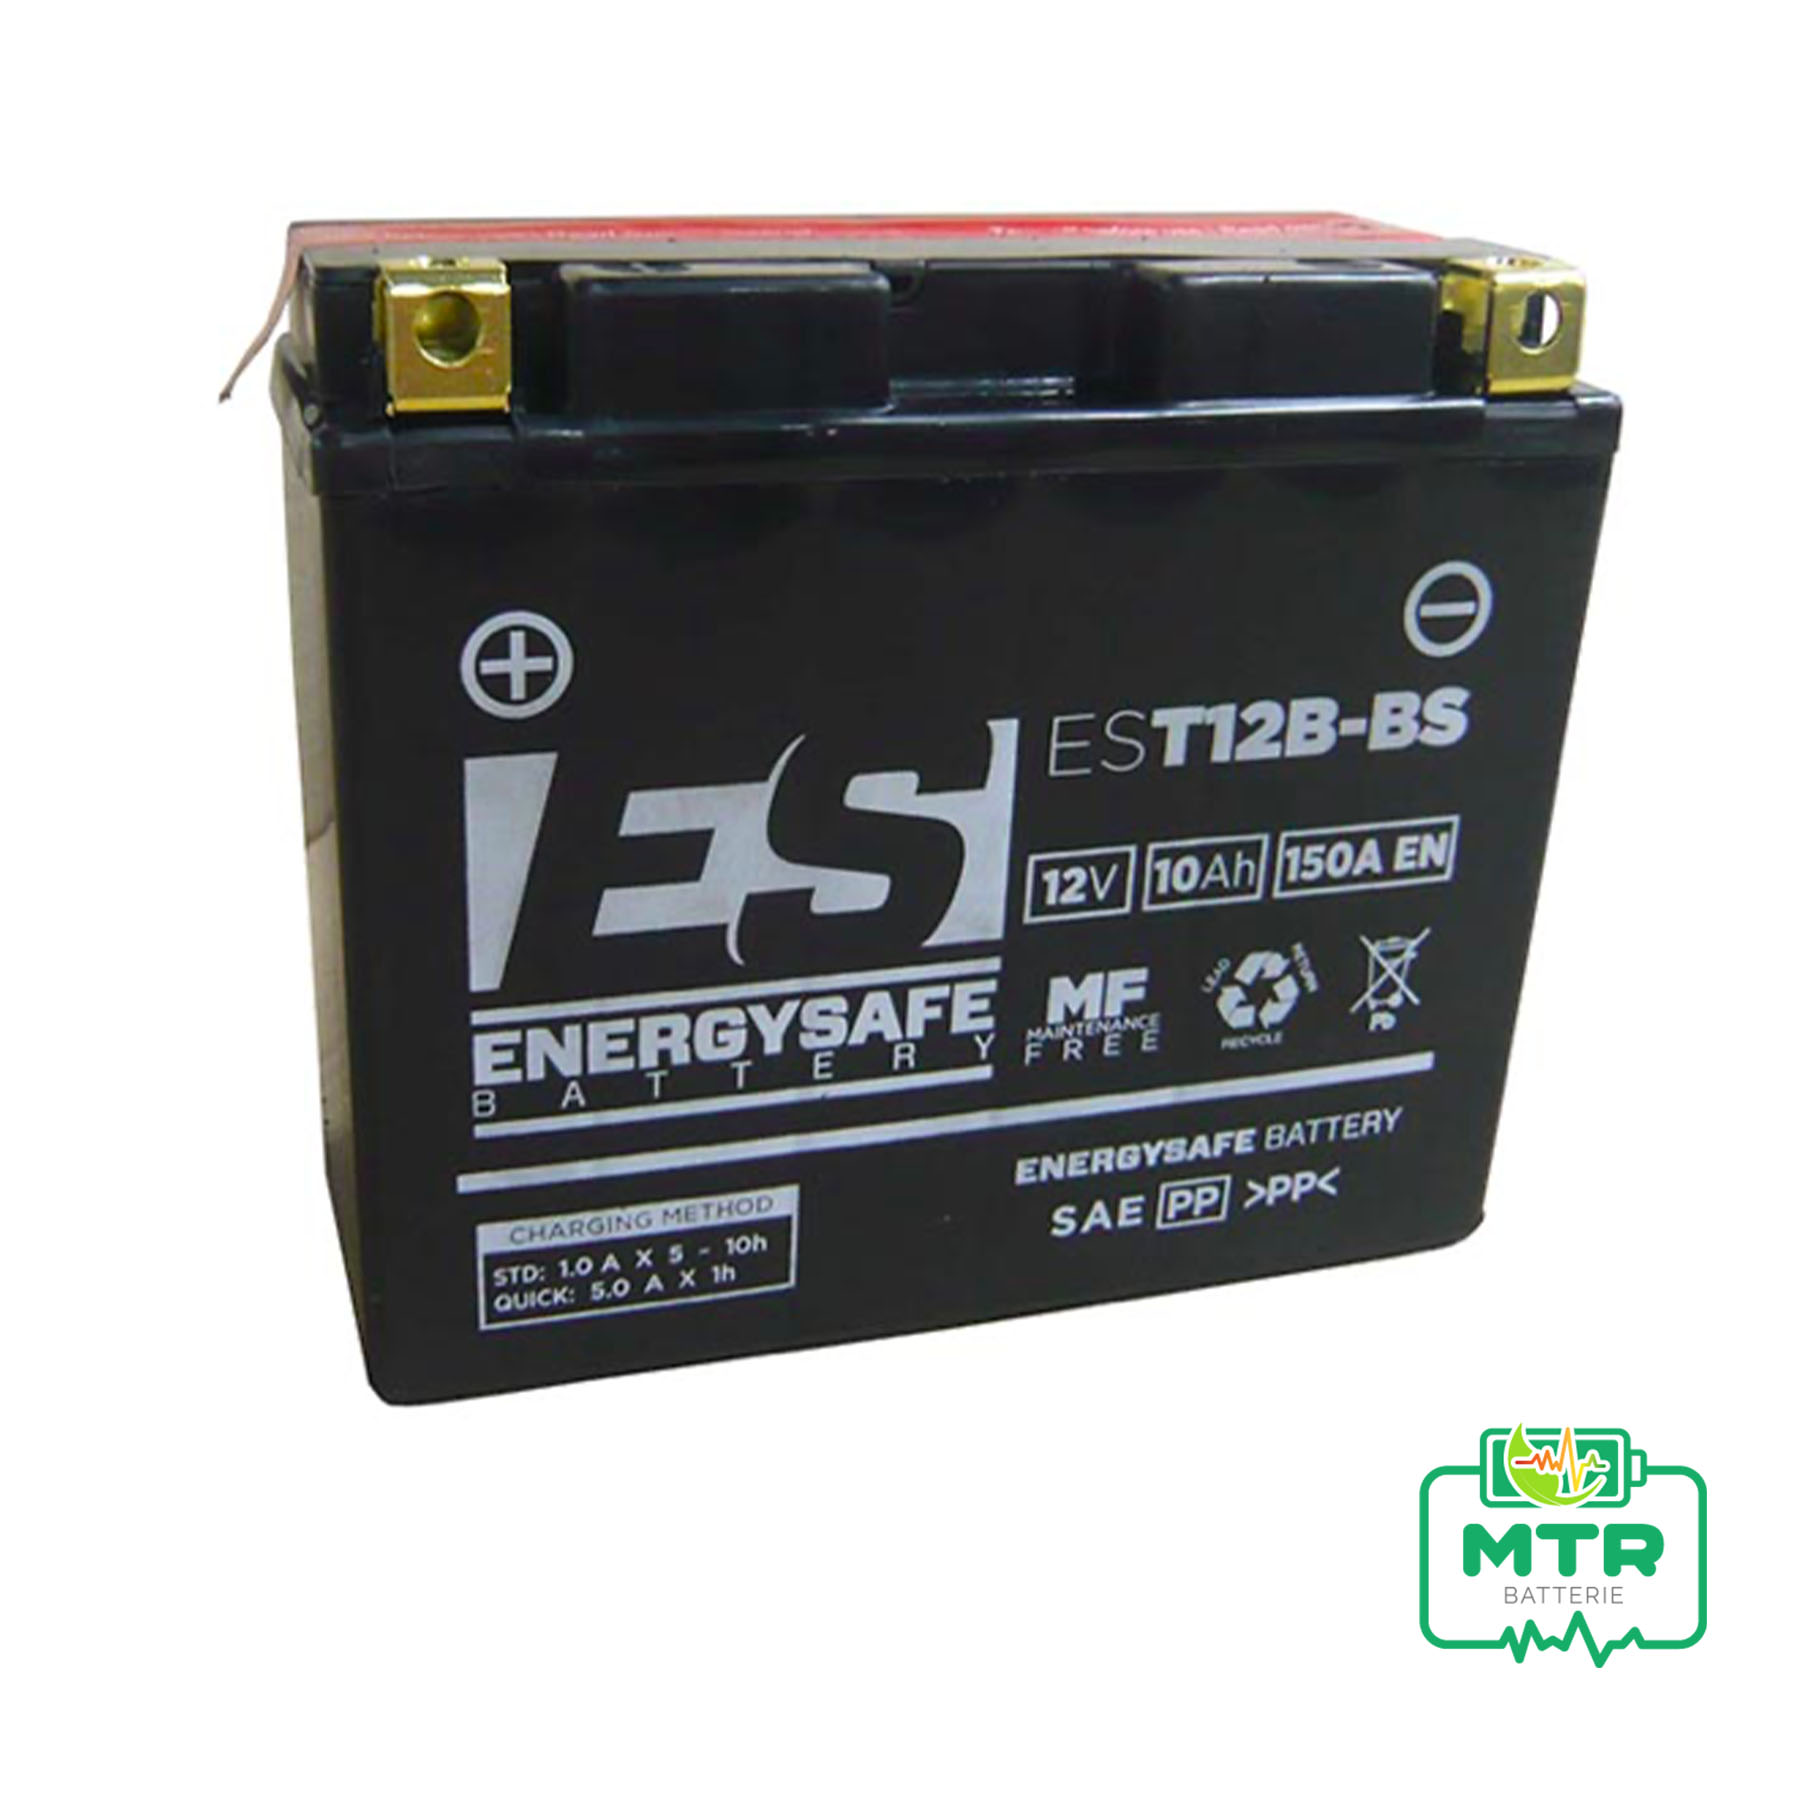 Batteria Moto Energysafe EST12B-BS - MTR Batterie